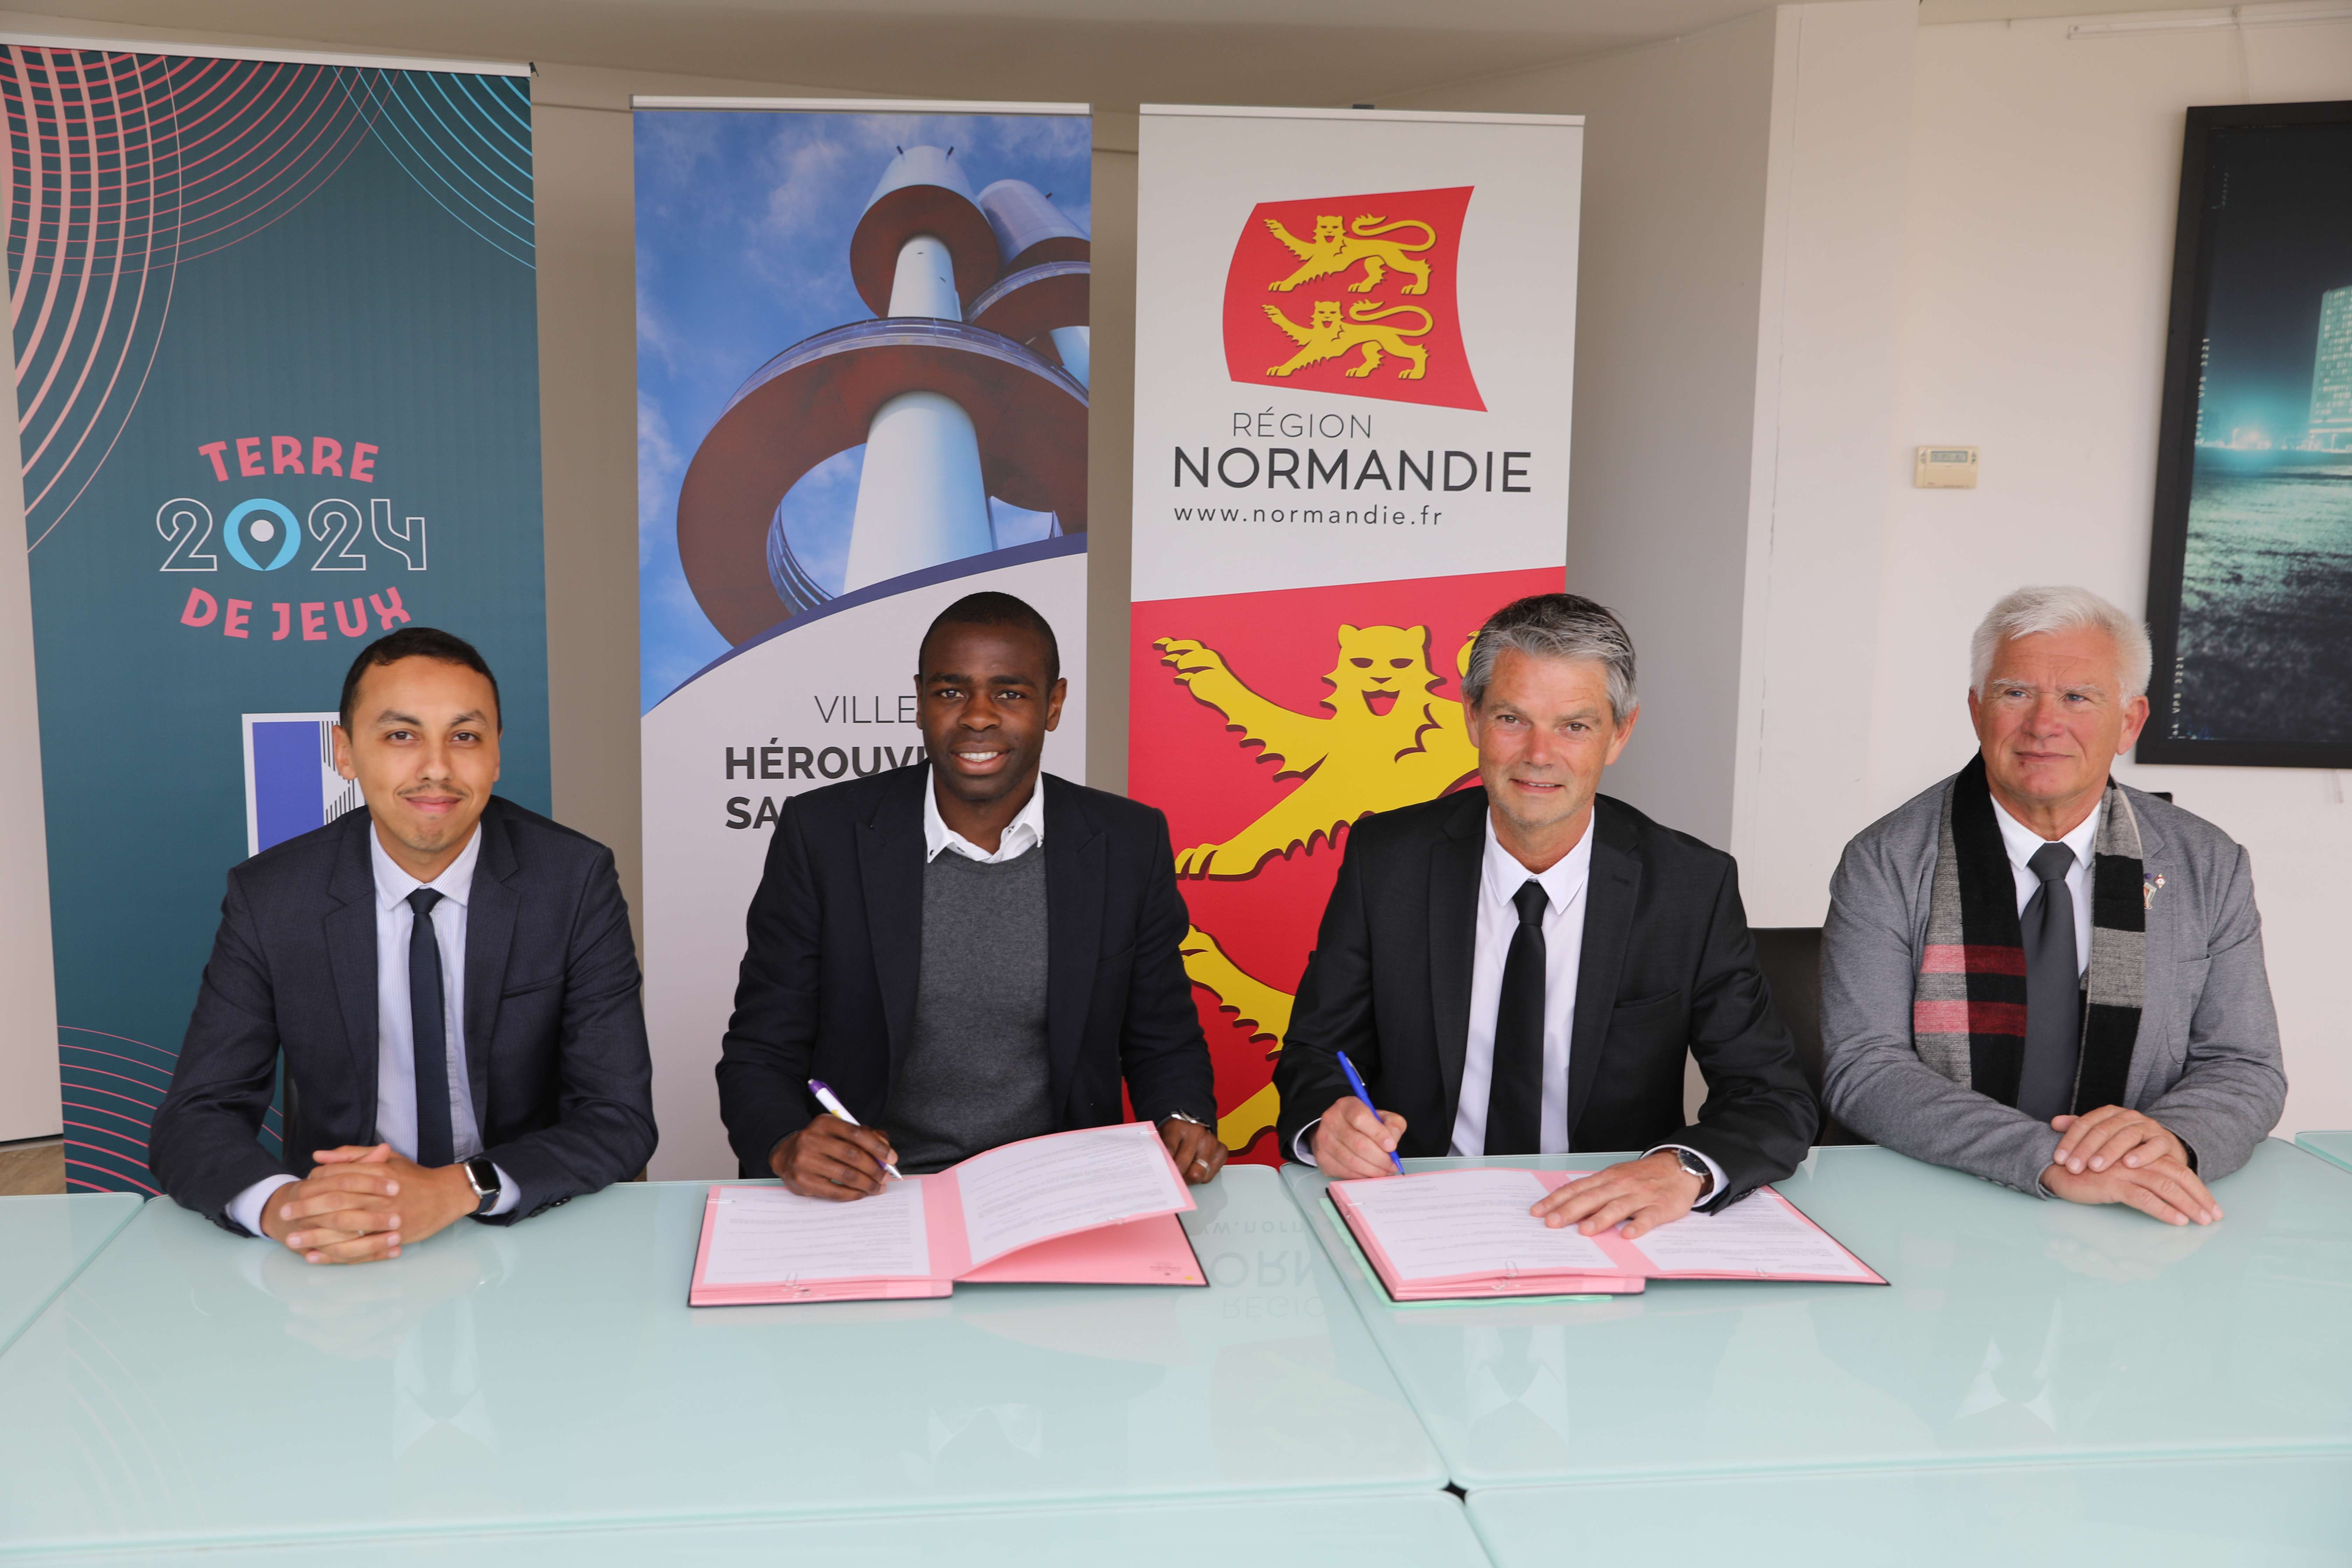 La convention de partenariat a été signée lundi 25 avril. De gauche à droite: (Abderrahmane Zerrouky, adjoint à la jeunesse et à la citoyenneté, Prince Oniangué, Rodlphe Thomas, maire et Philippe Hannot, adjoint aux sports).